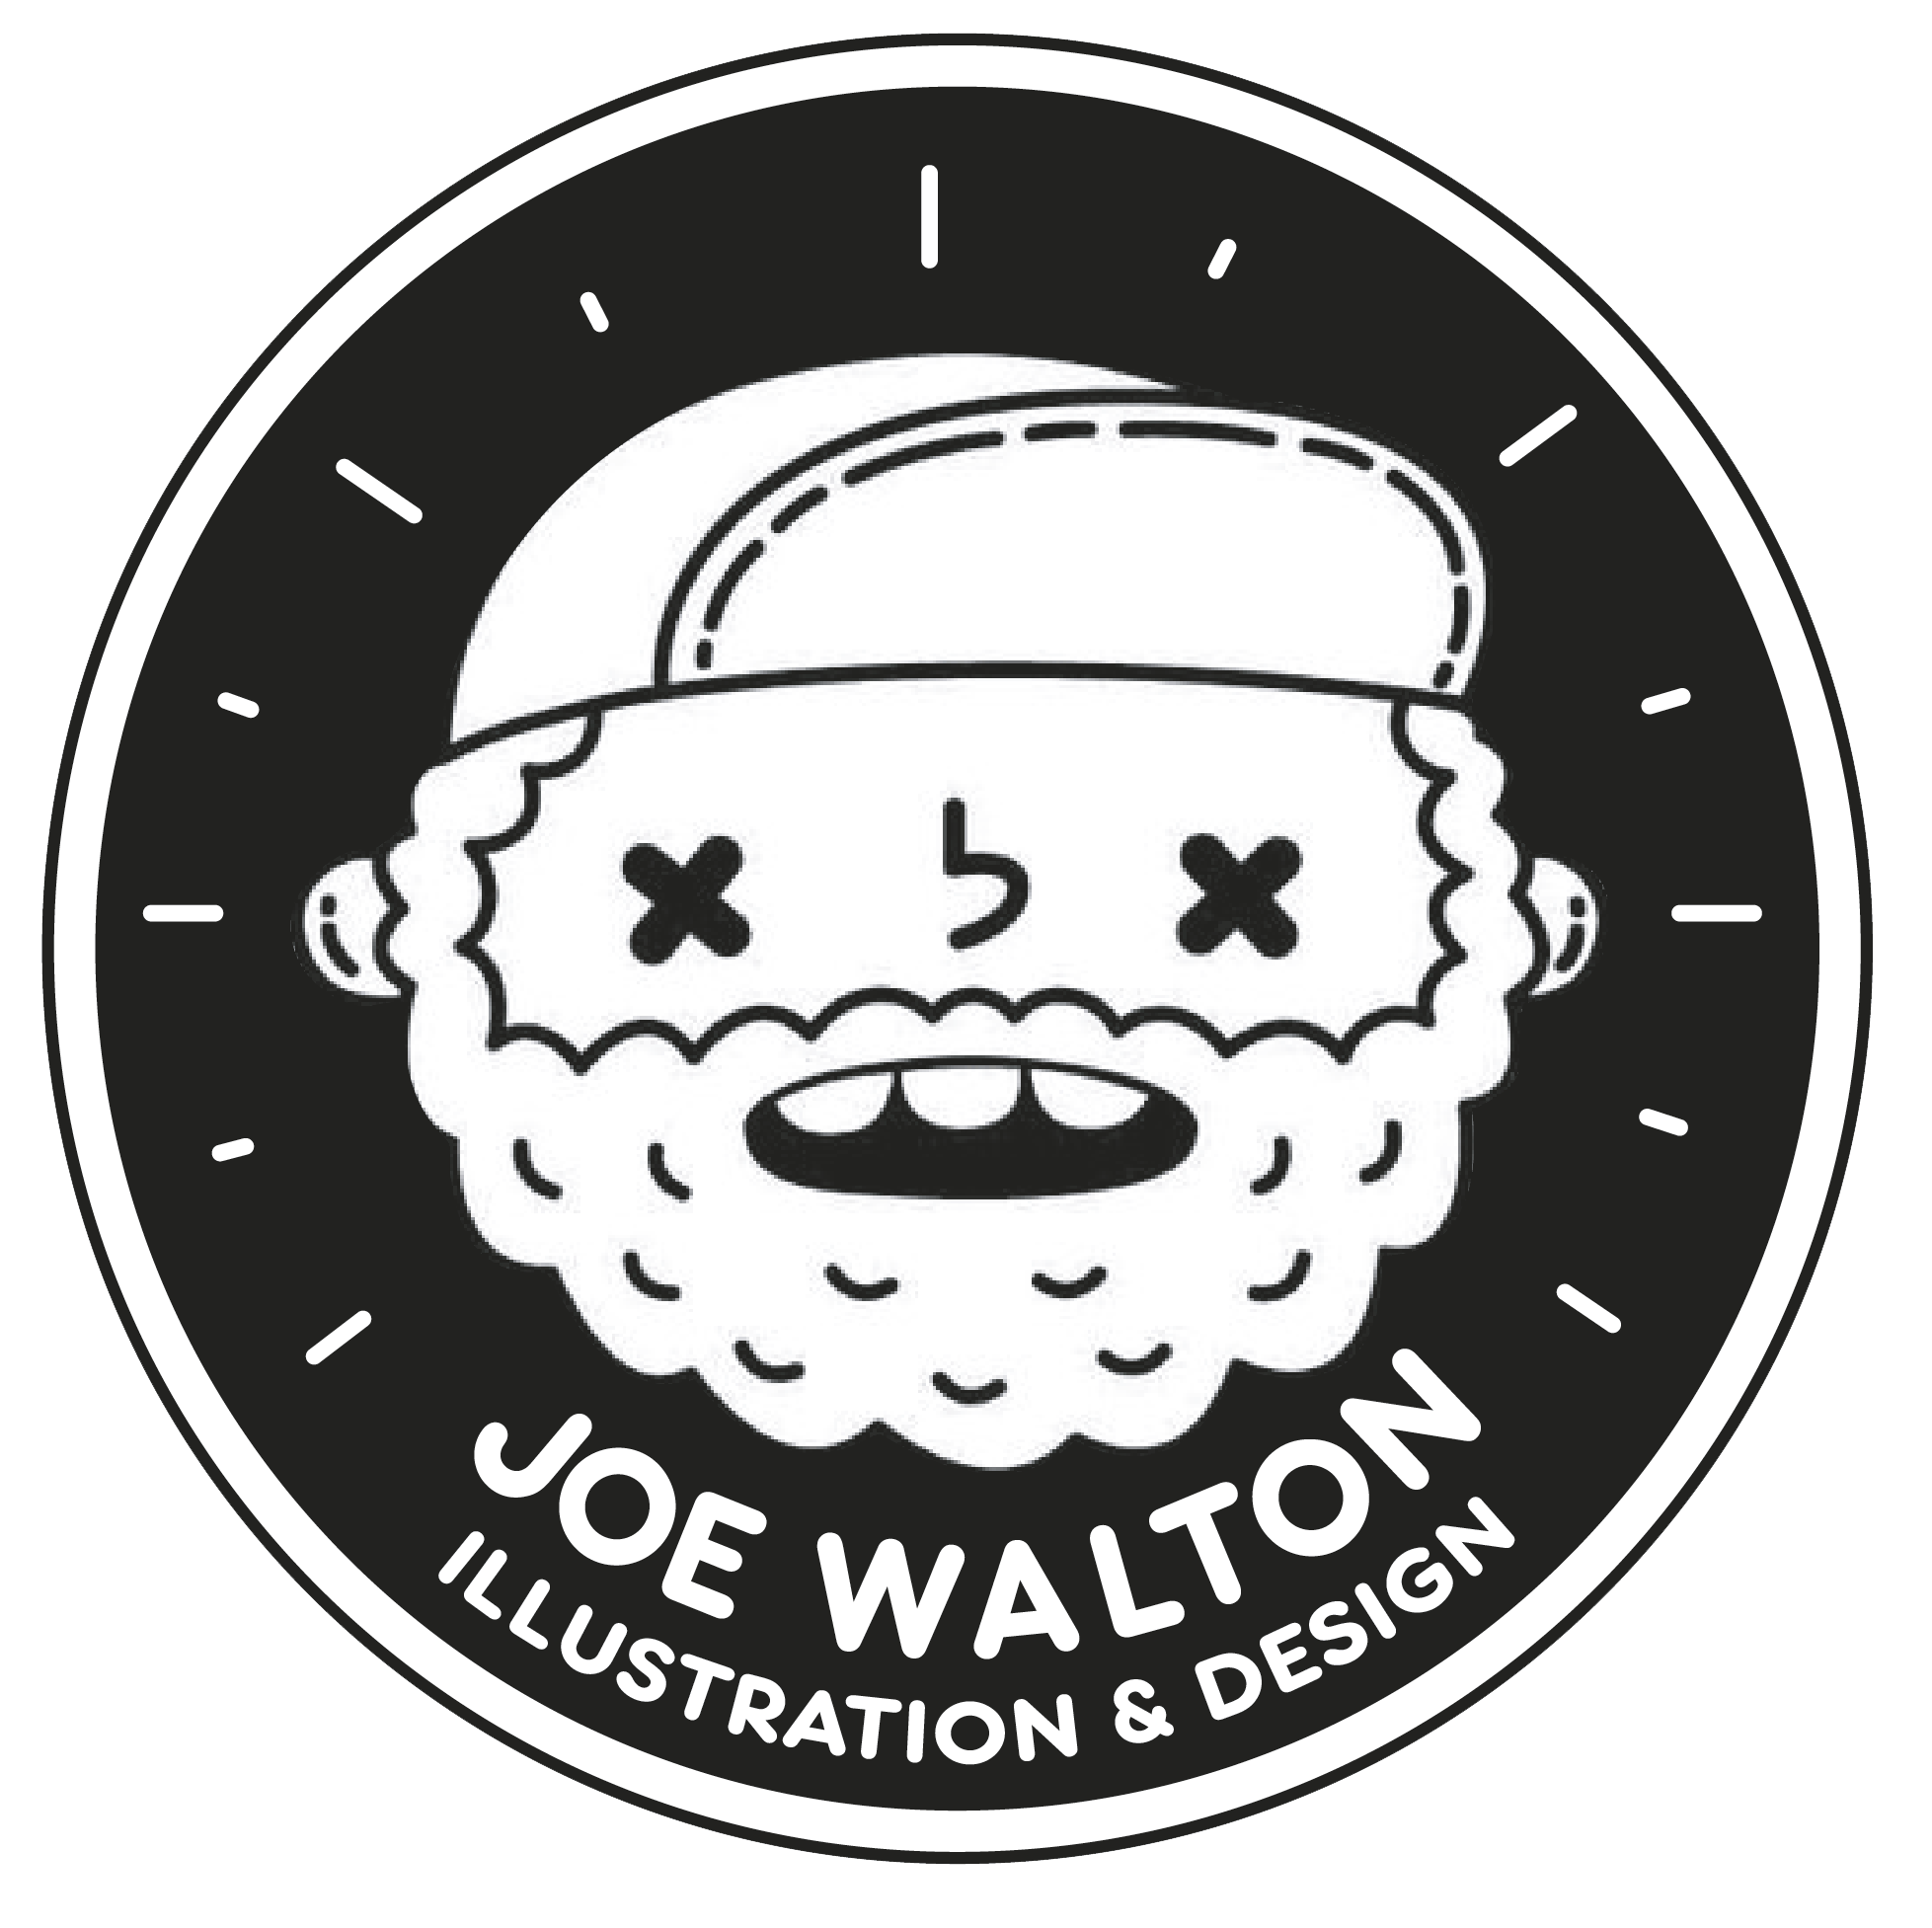 Joe Walton